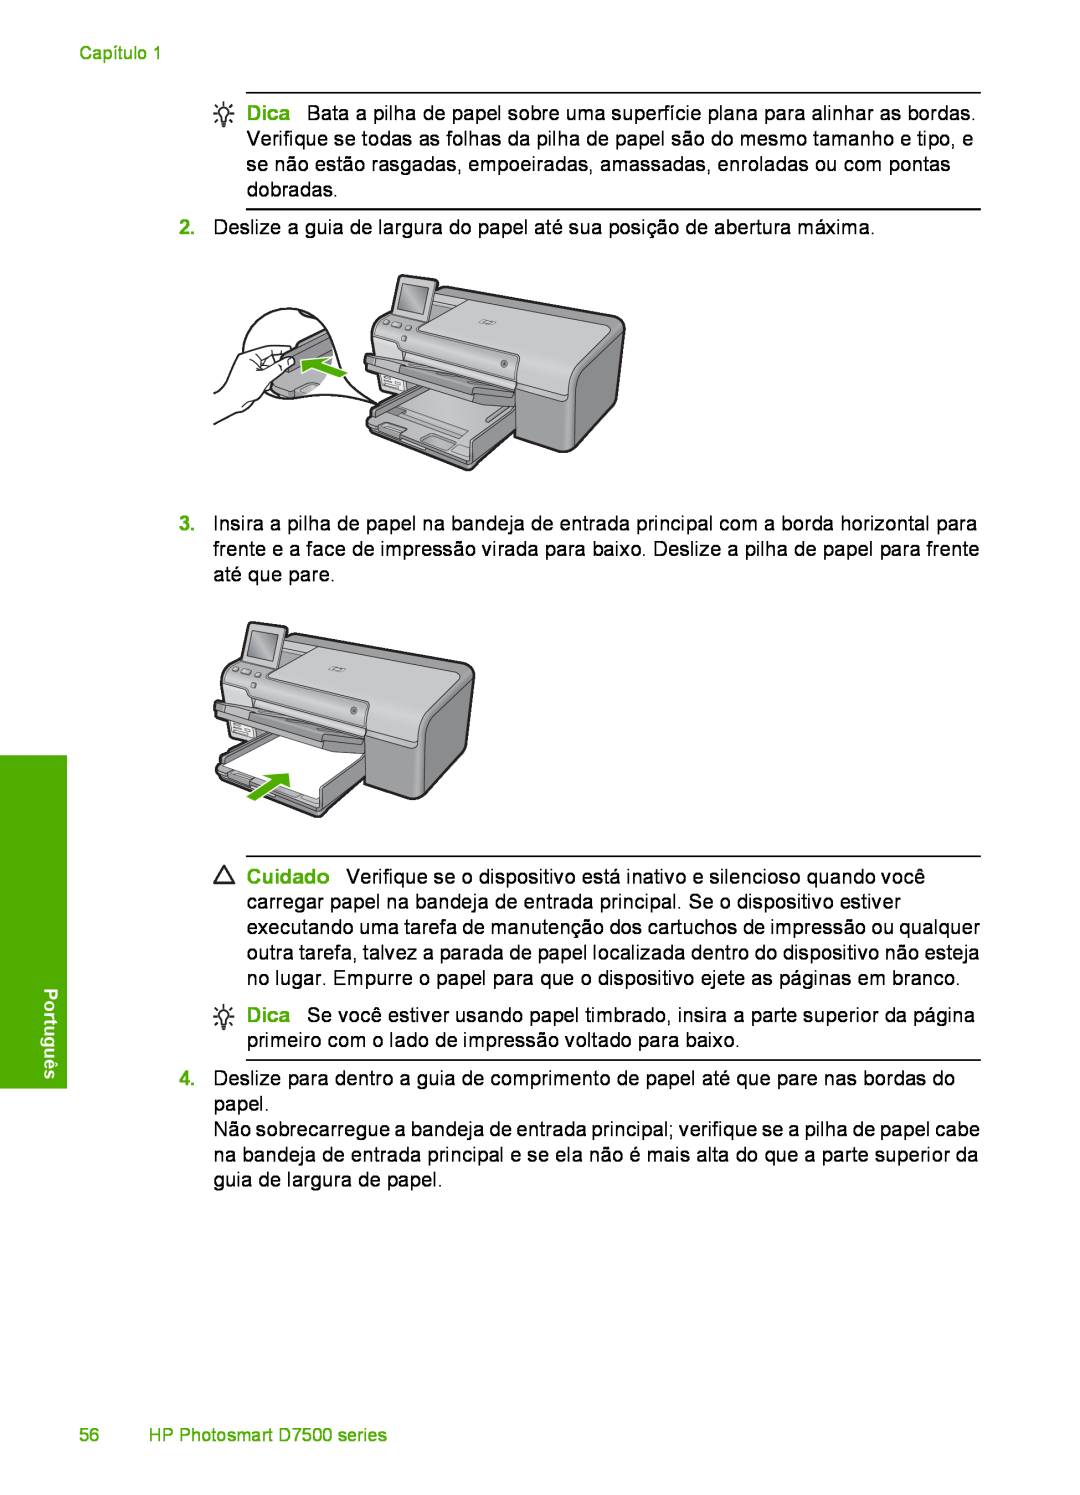 HP D7560 manual 